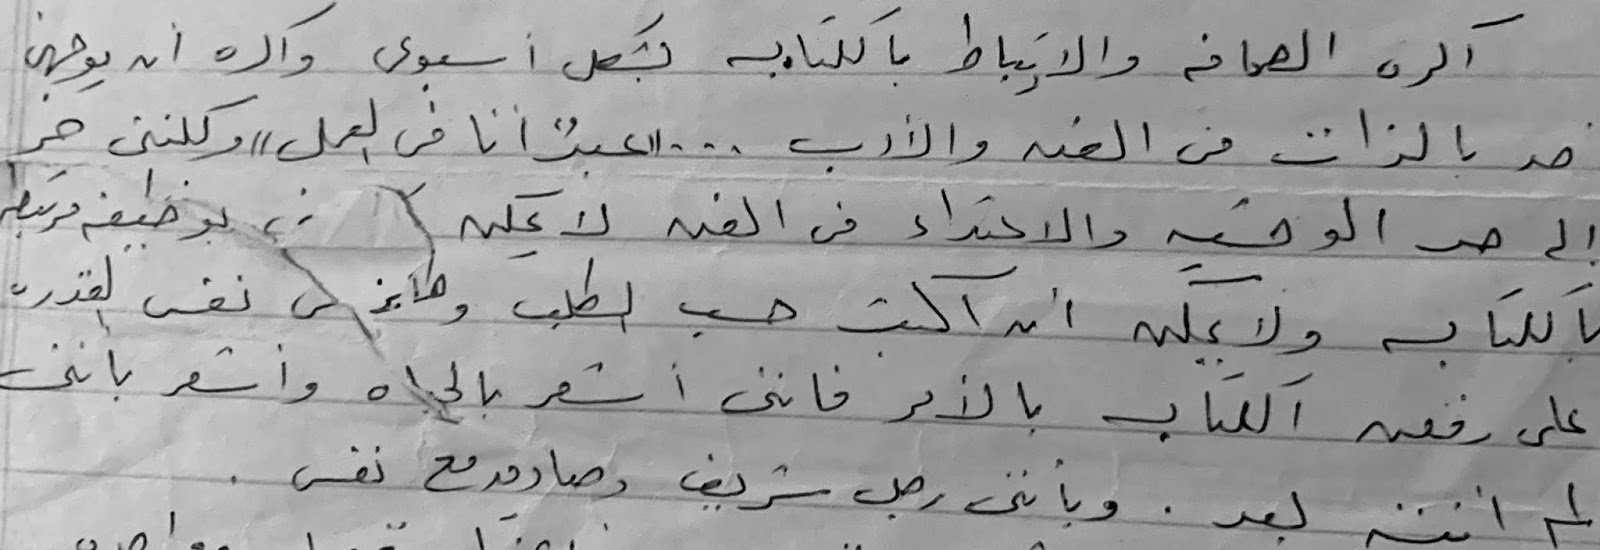 جواب من الكاتب لزوجته، أرشيف الفنان عمرو سعيد الكفراوي لم ينشر من قبل. 